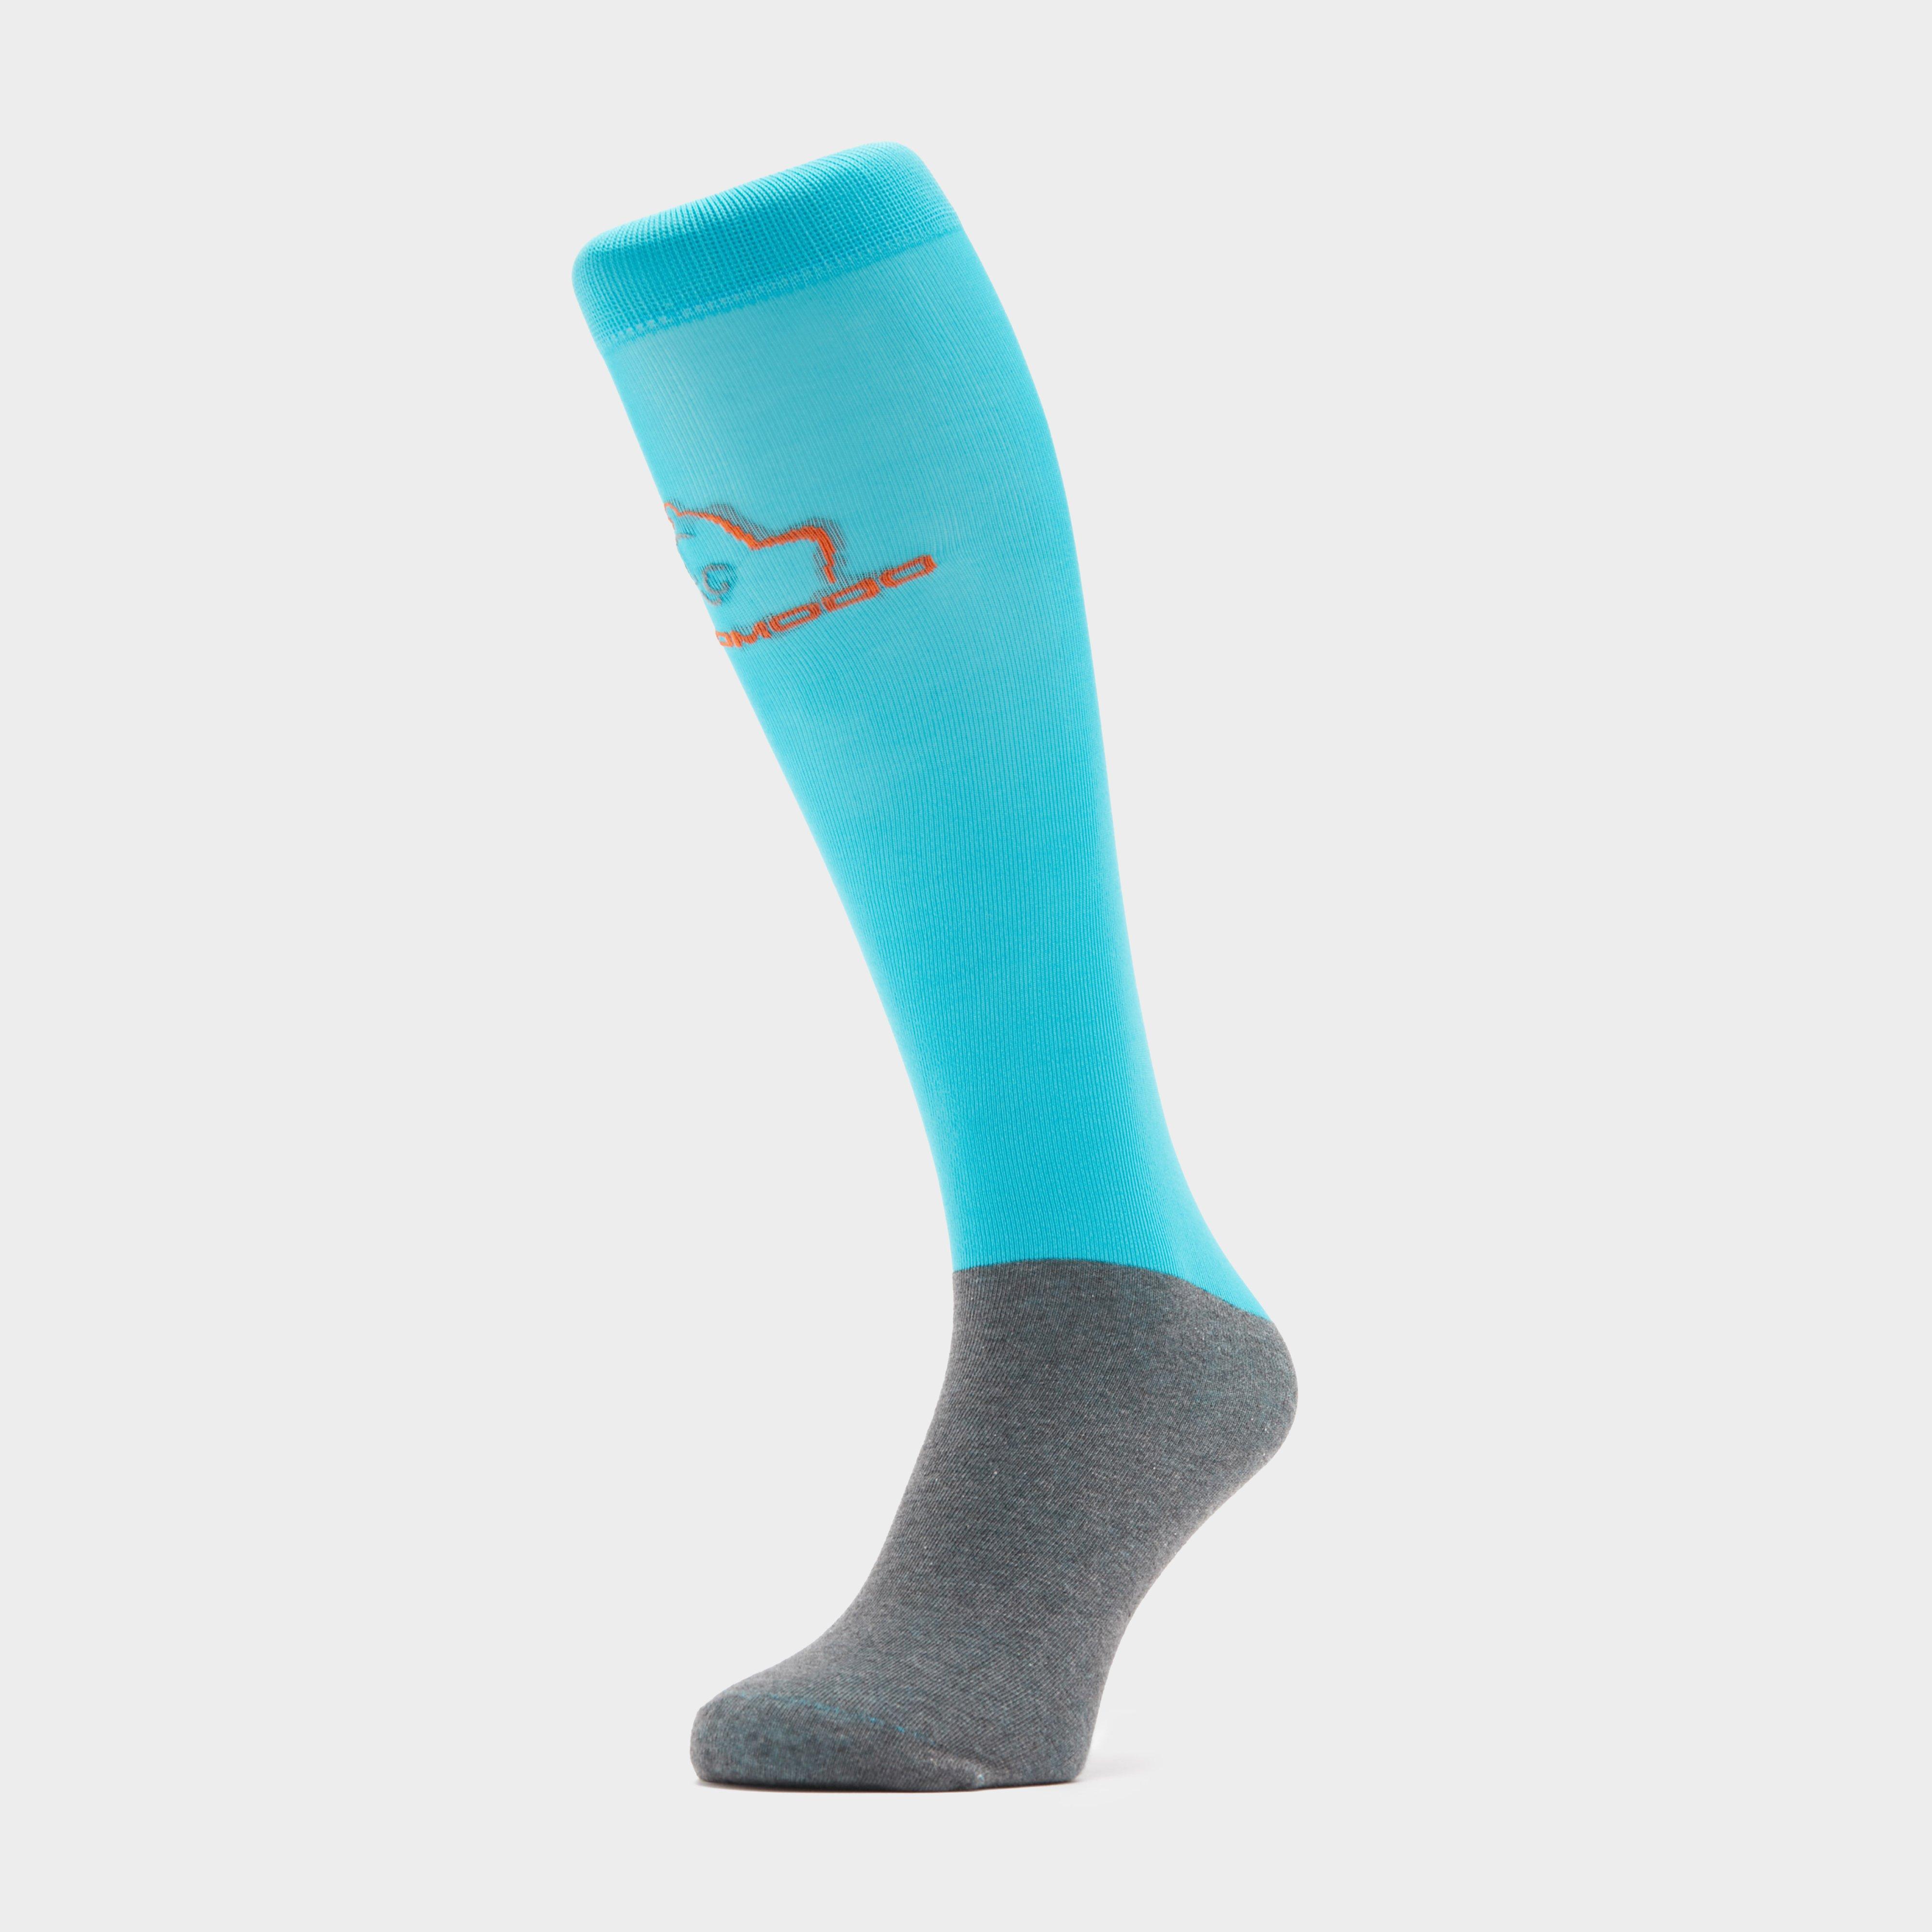 Comodo Kids Silicone Grip Socks - Blue/blue  Blue/blue